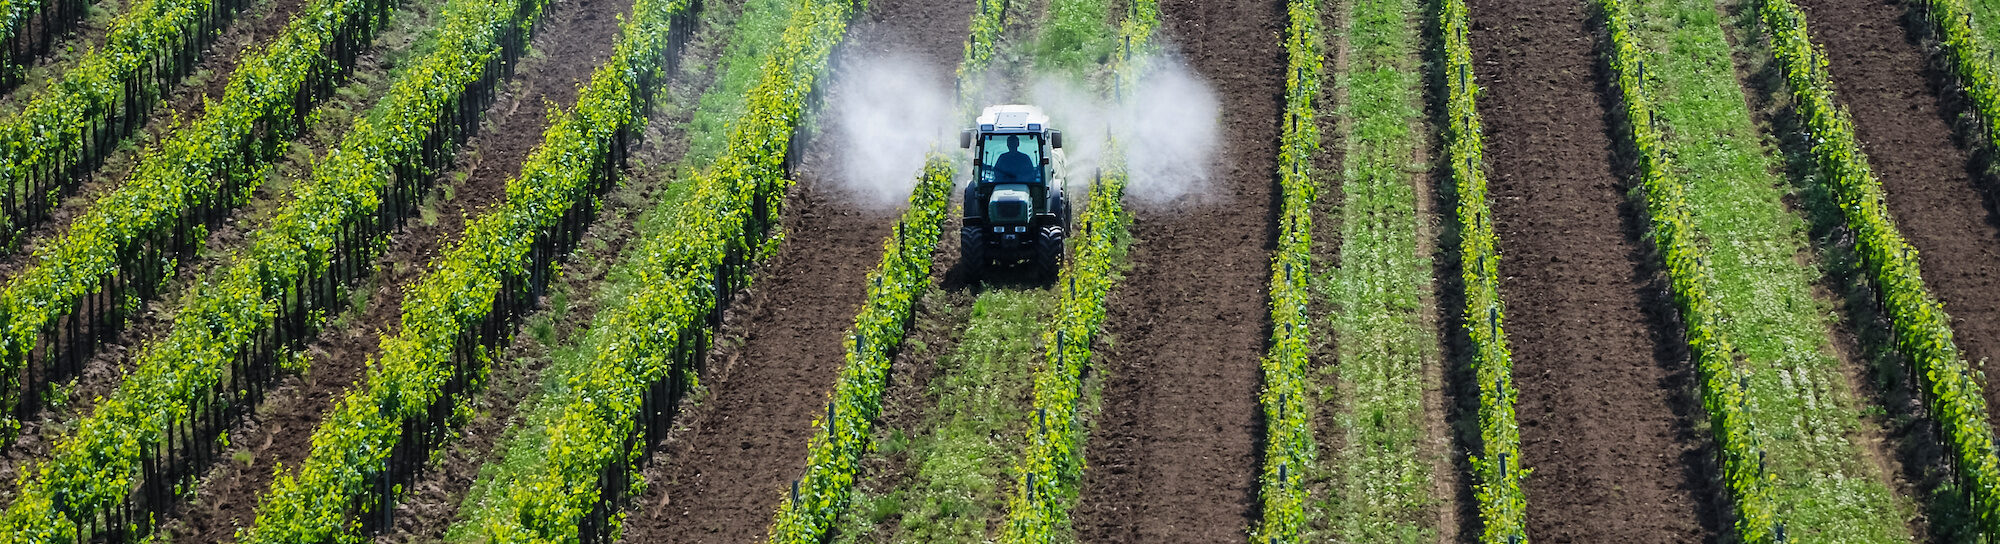 Cinq mythes sur les pesticides